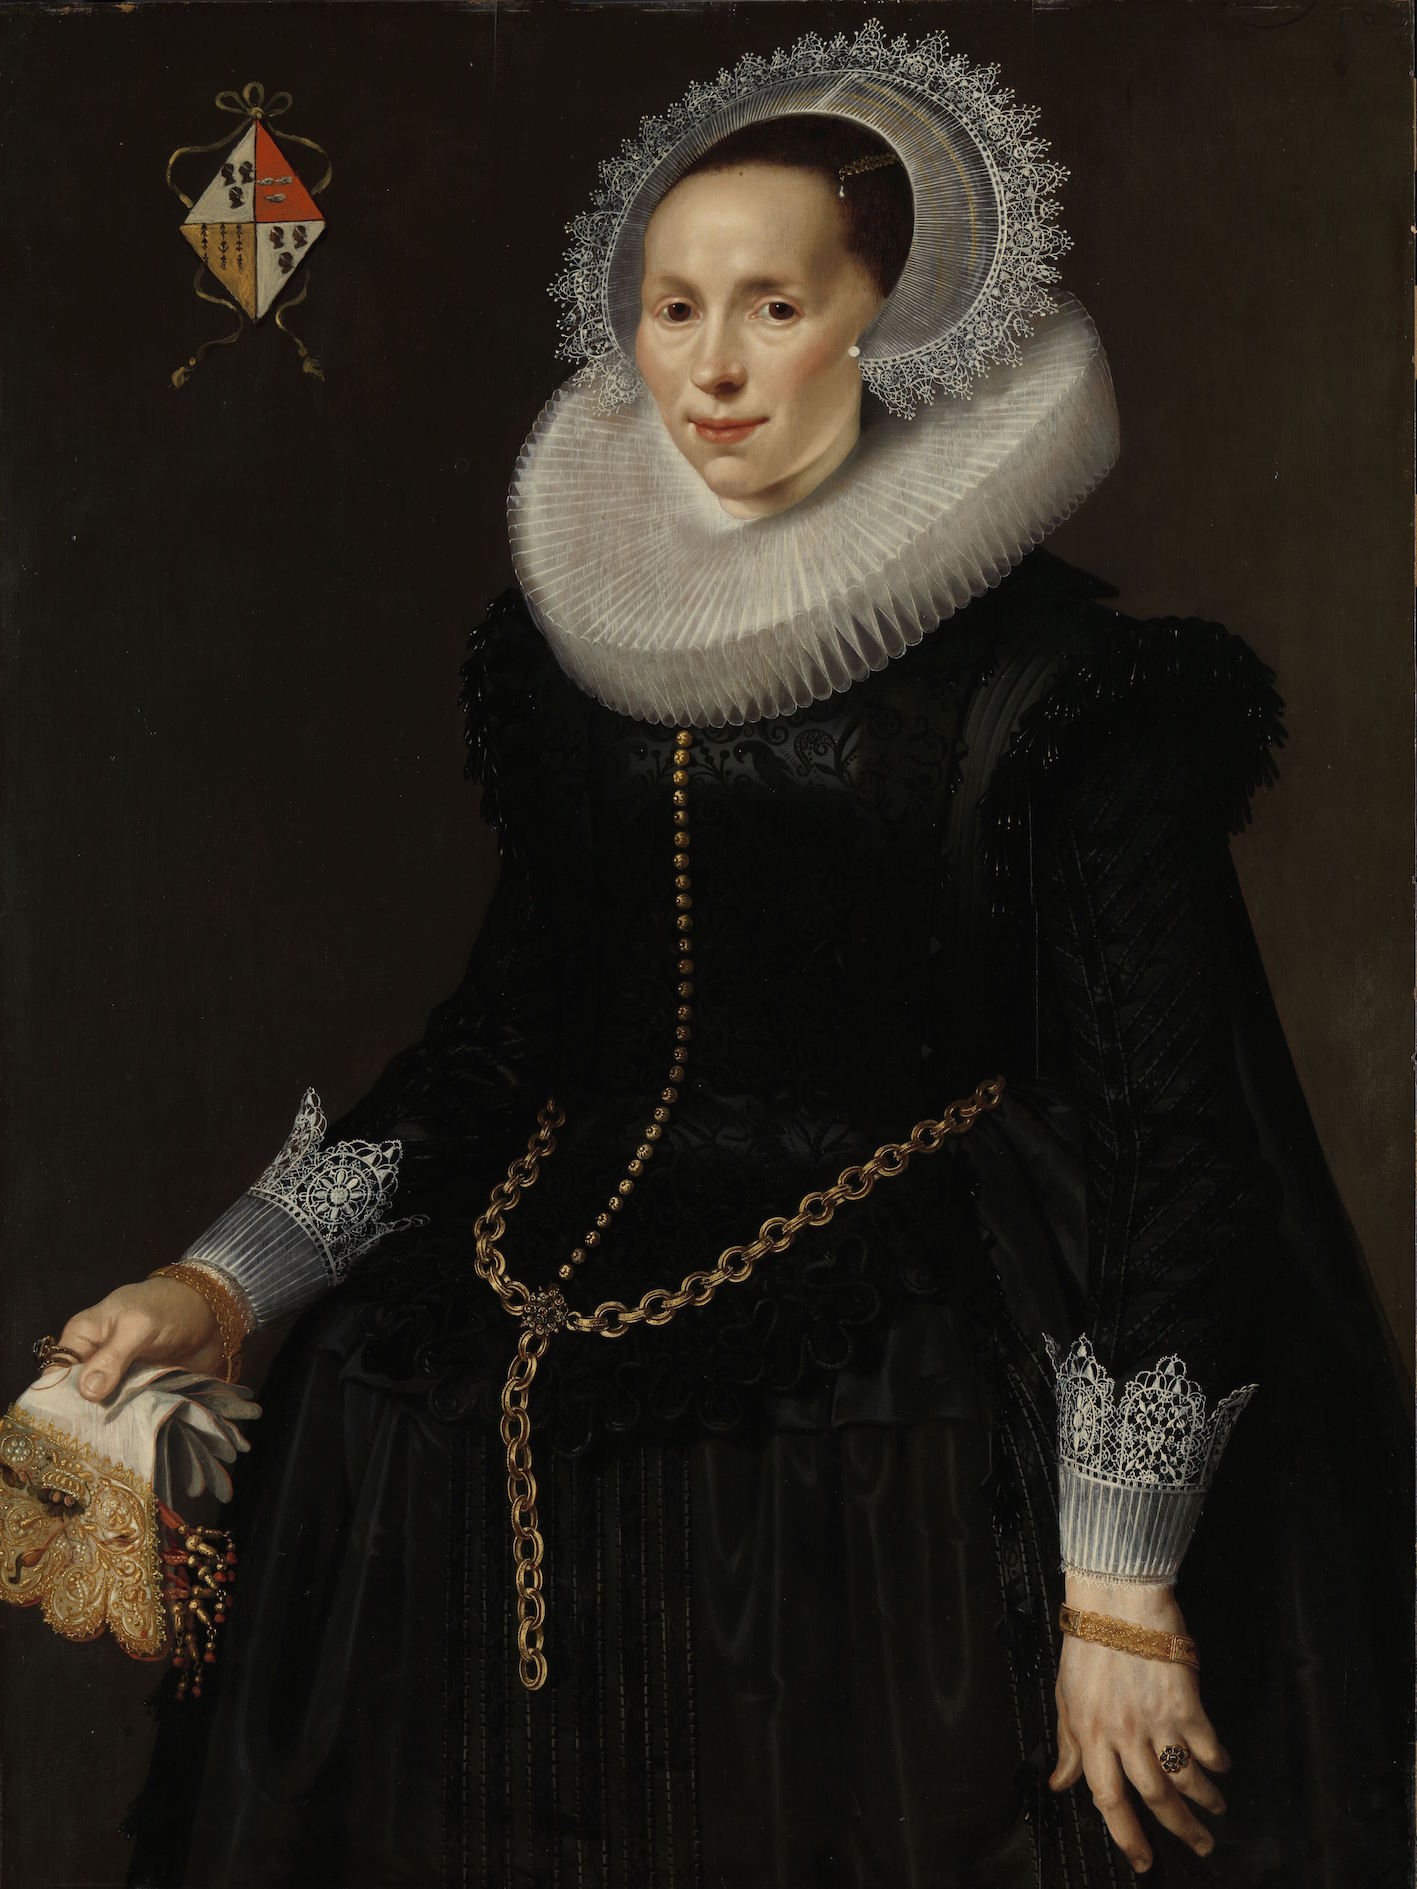 Maria La Maire, c. 1625, by 